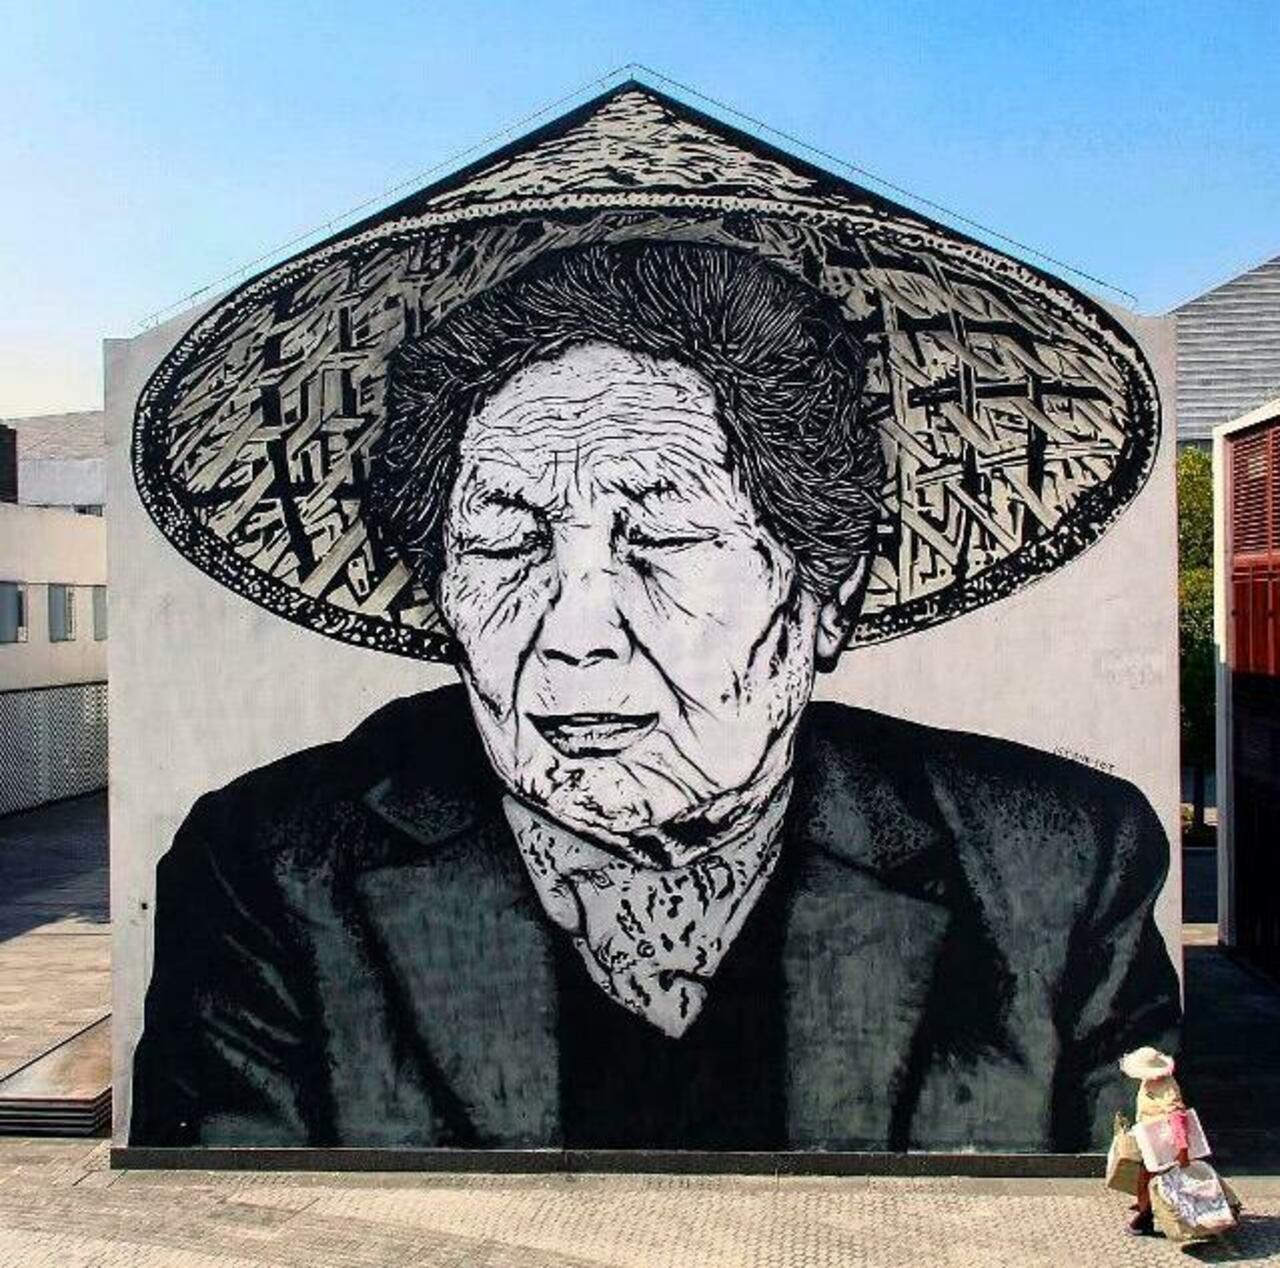 New tumblr post: "New Street Art by icy&sot in Shanghai  

#art #graffiti #mural #streetart http://t.co/jqLnX4fC3j" …